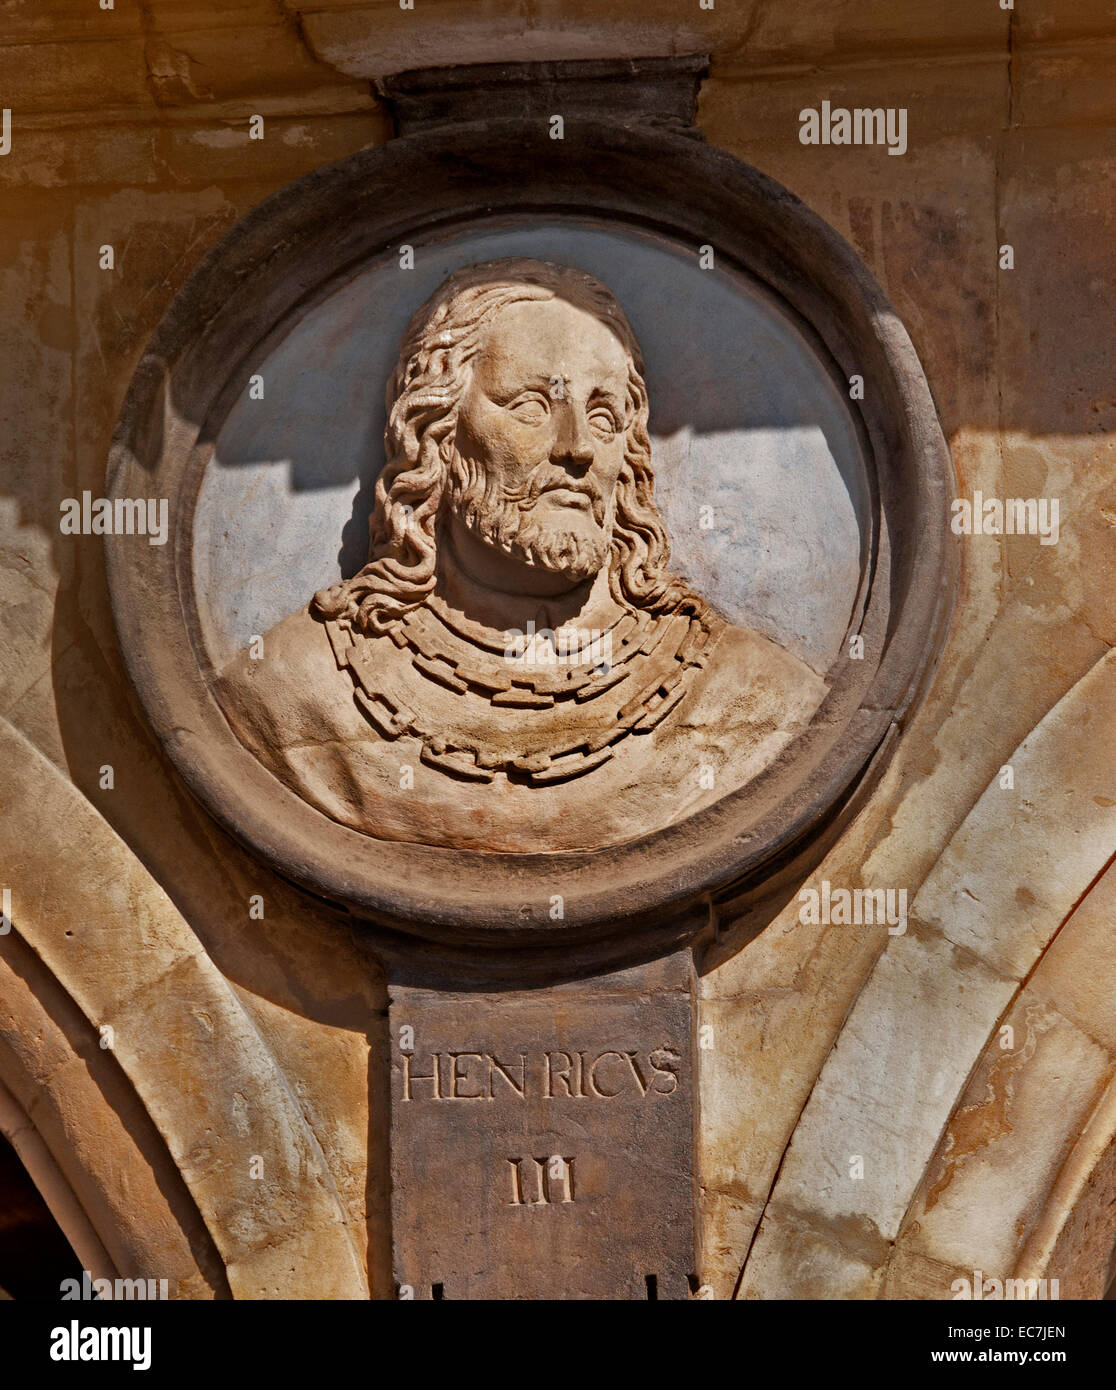 Henricvs III - Enrique III de Castilla 1379 - 1406 ( Henry el Sufriente o Enrique el enfermo ) rey español Real España ( Plaza Mayor Salamanca ) Foto de stock